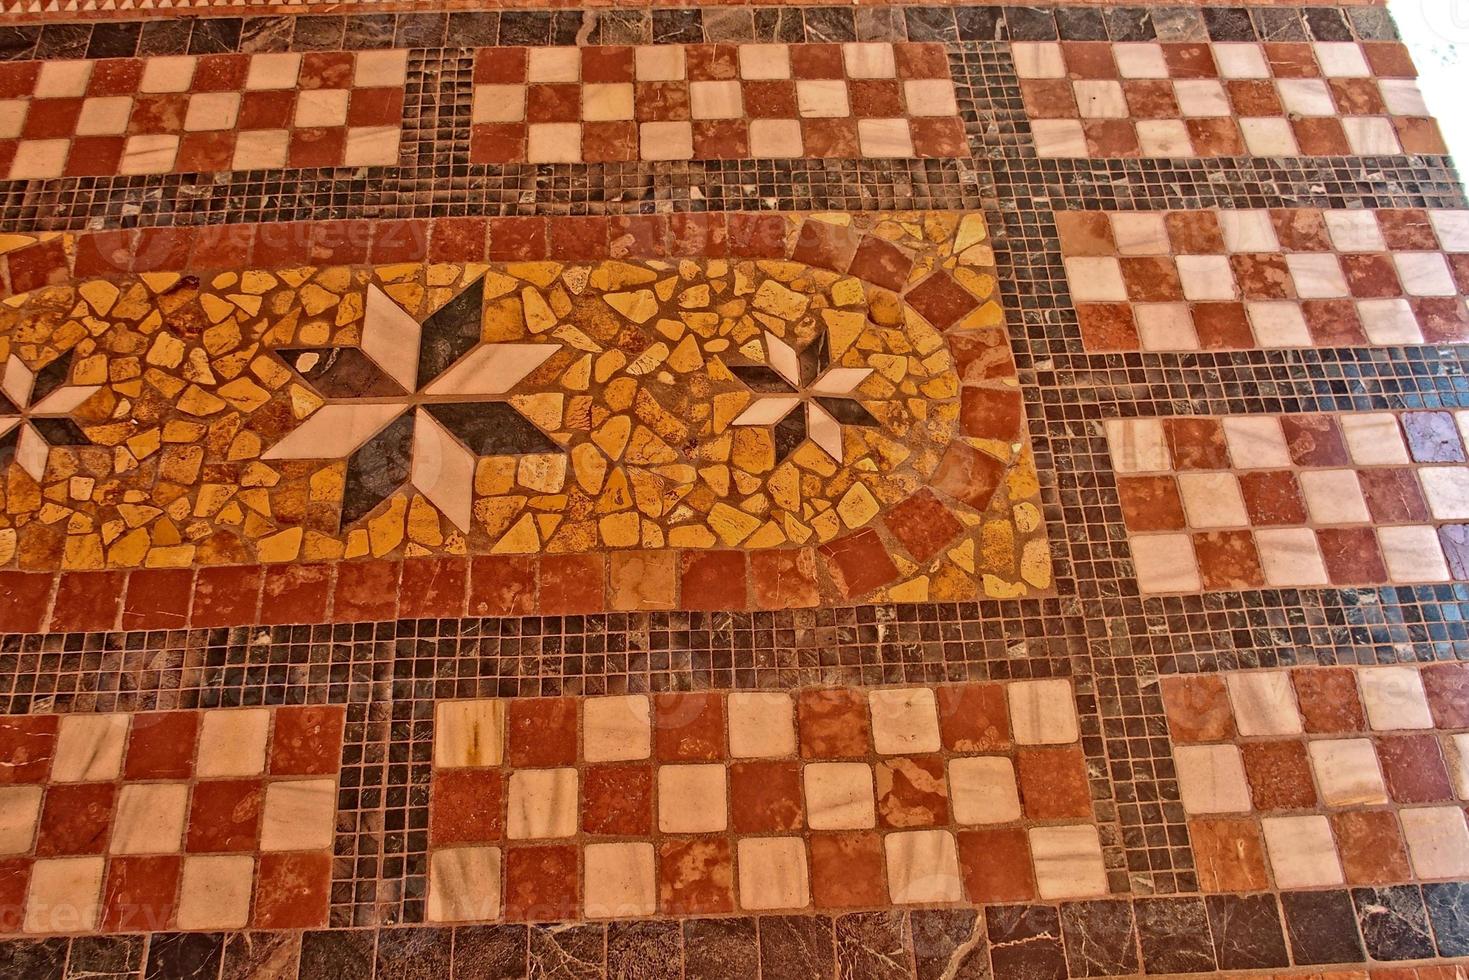 interessante original espanhol estilo mosaico chão dentro uma construção foto